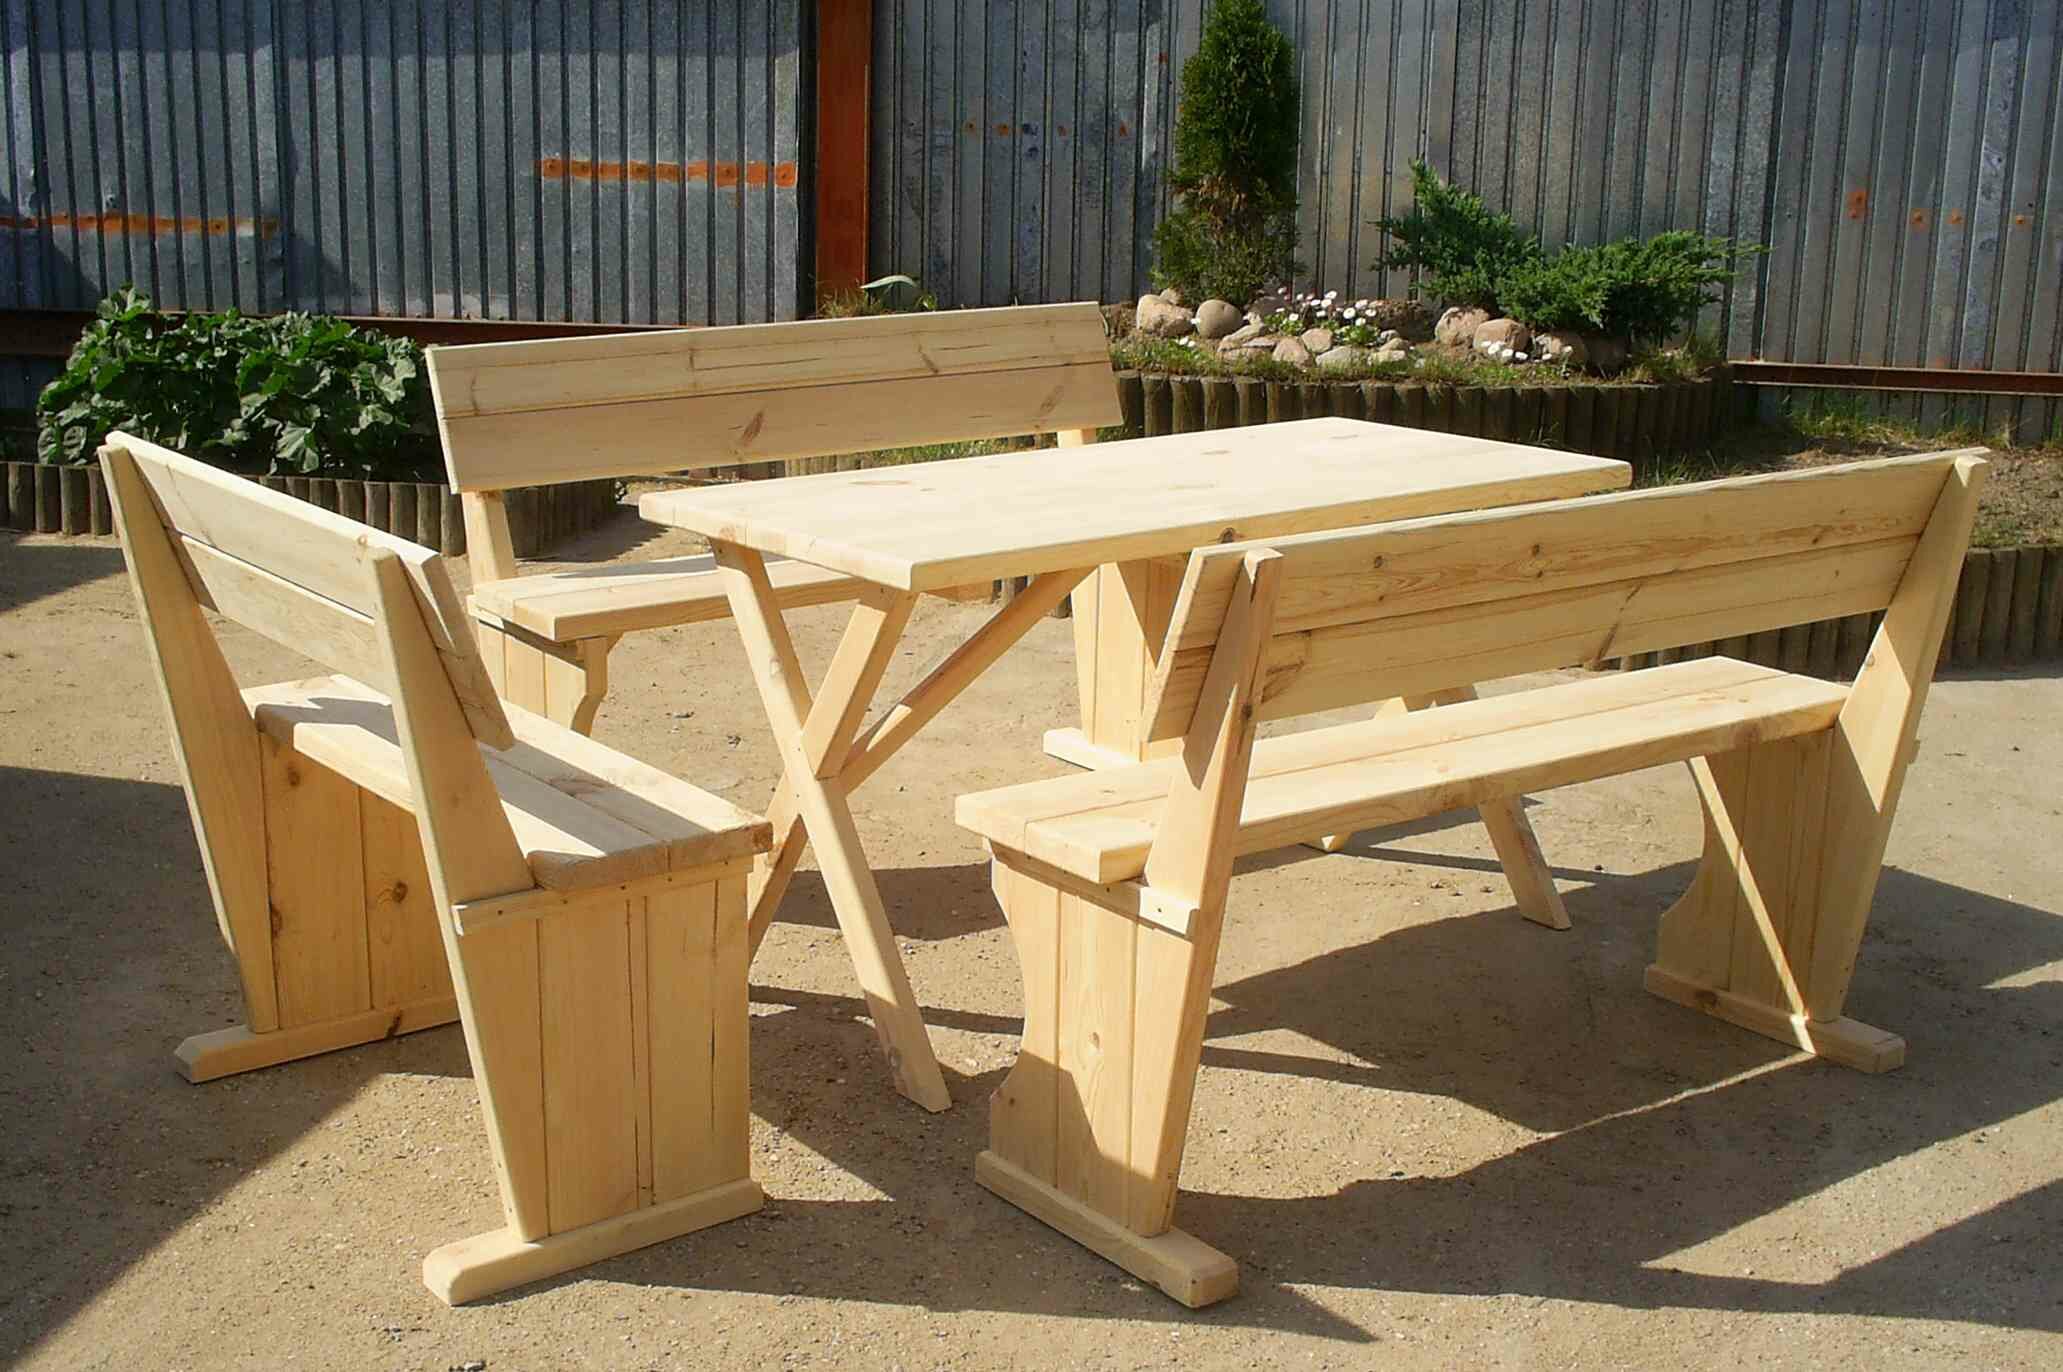 Садовая мебель может быть изготовлена из различных пород дерева